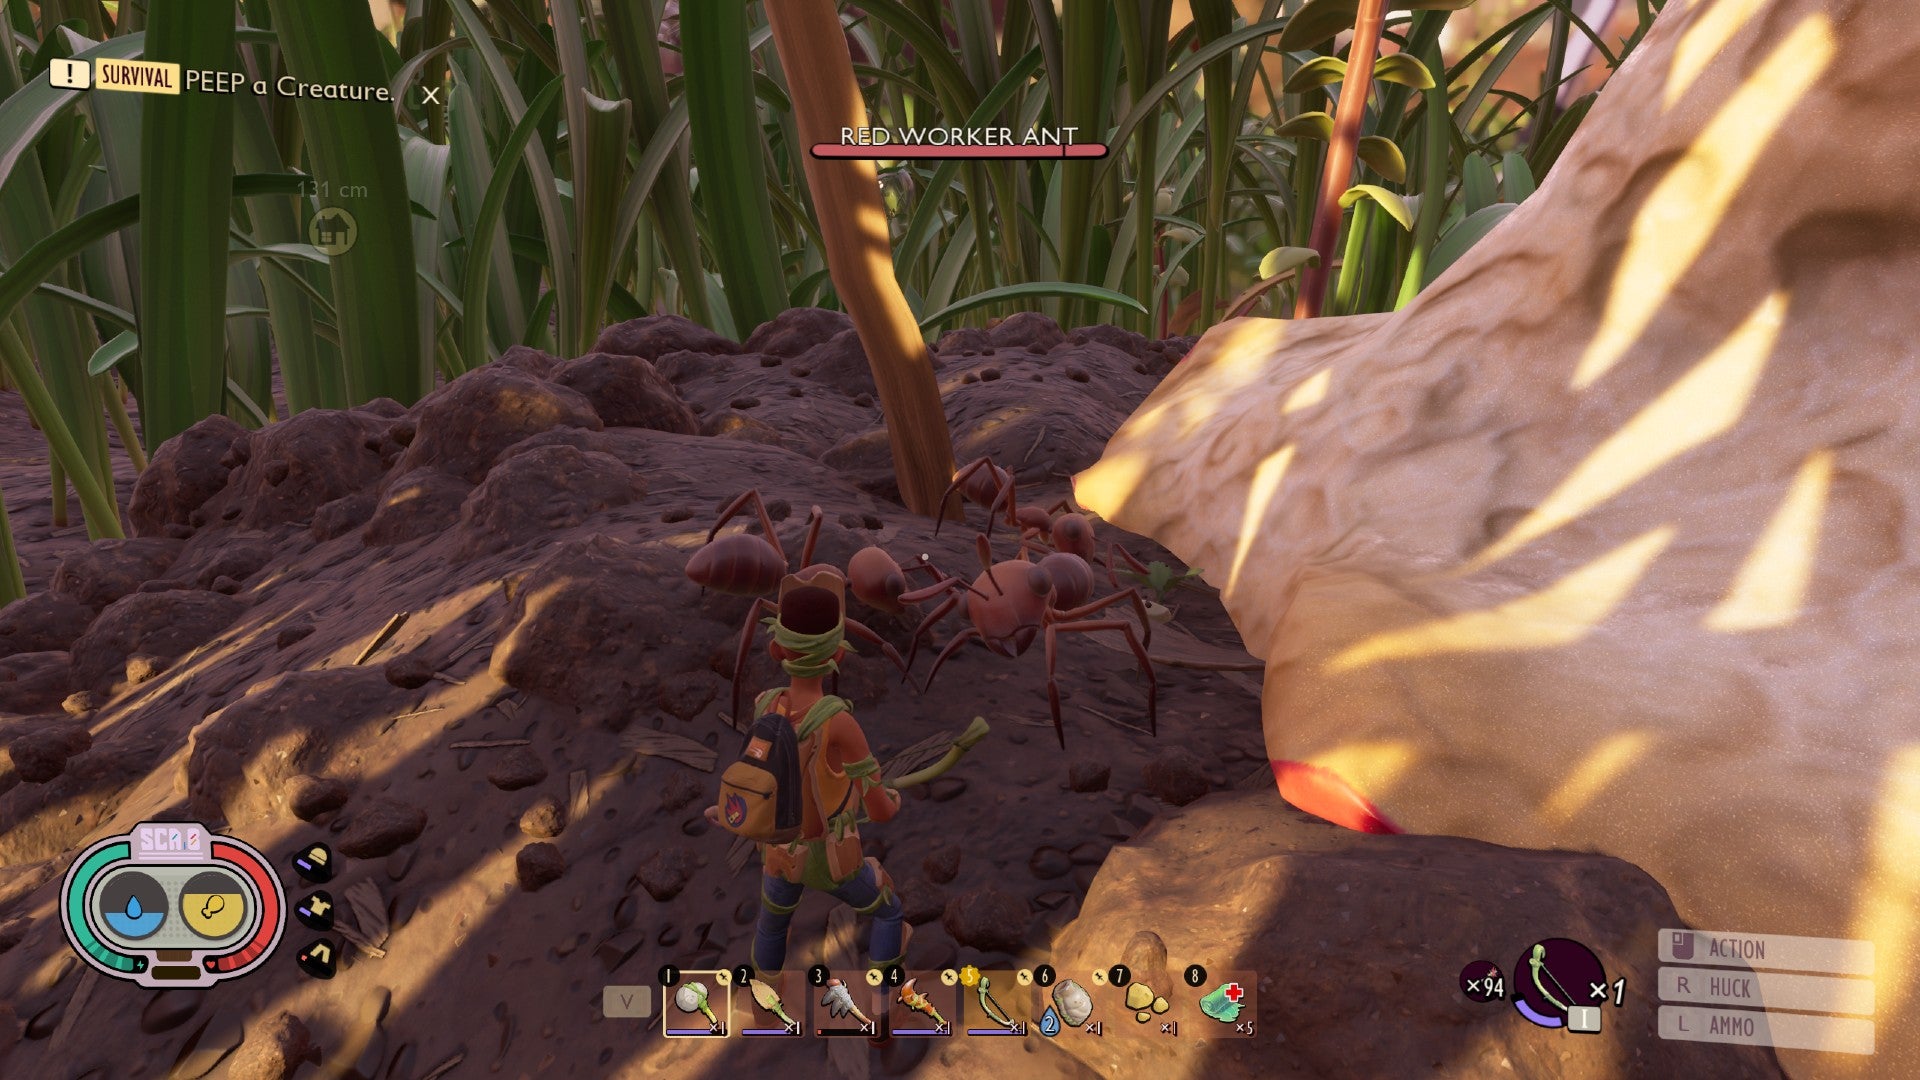 Captura de pantalla conectada a tierra que muestra algunas hormigas cavando en la tierra a la sombra.  Están comiendo una pequeña planta.